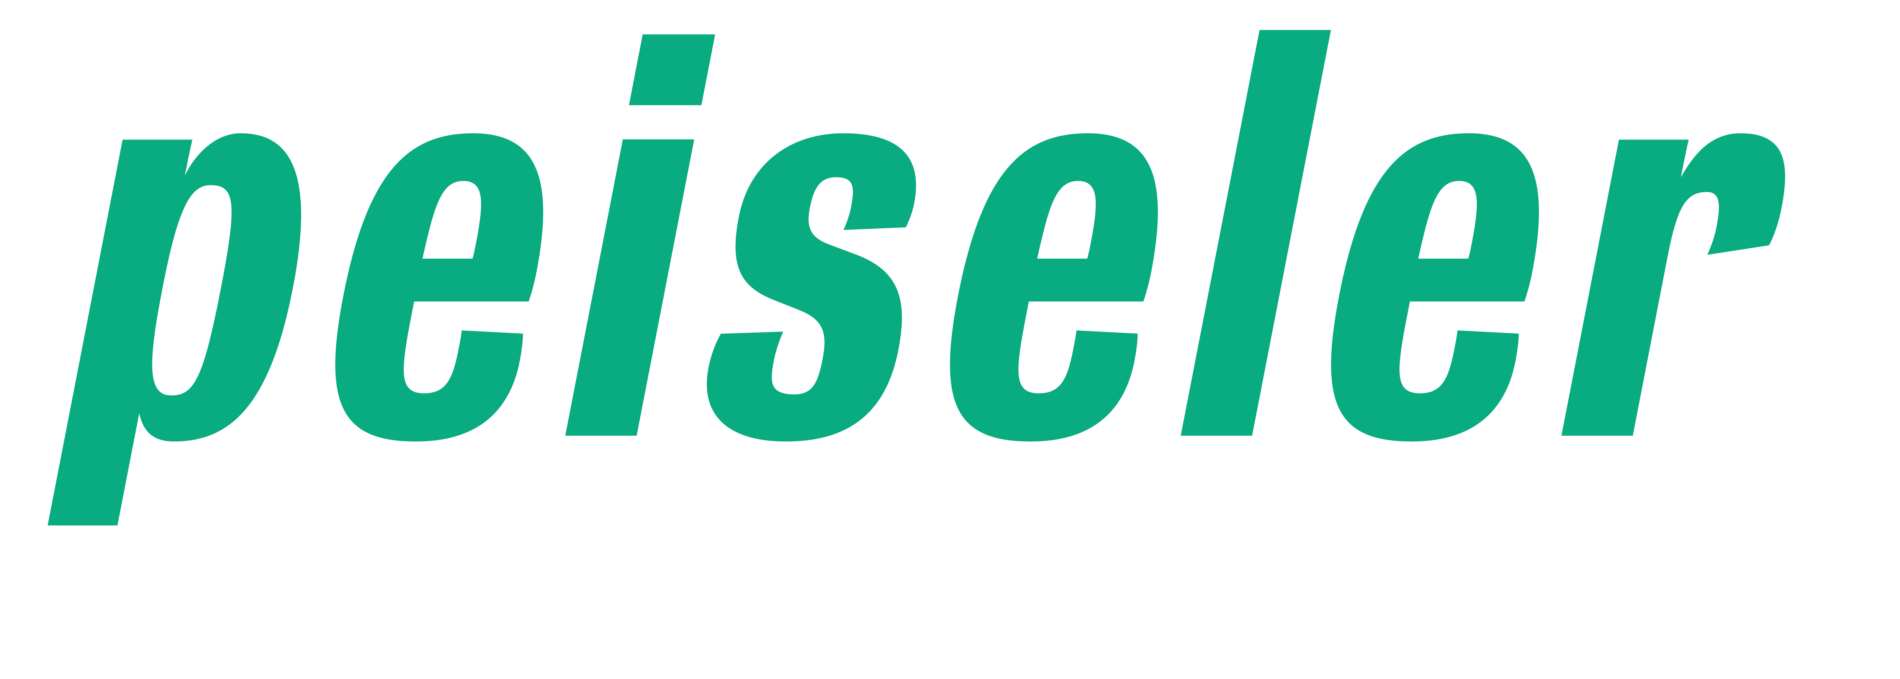 Beteiligung: PEISELER GmbH & Co. KG